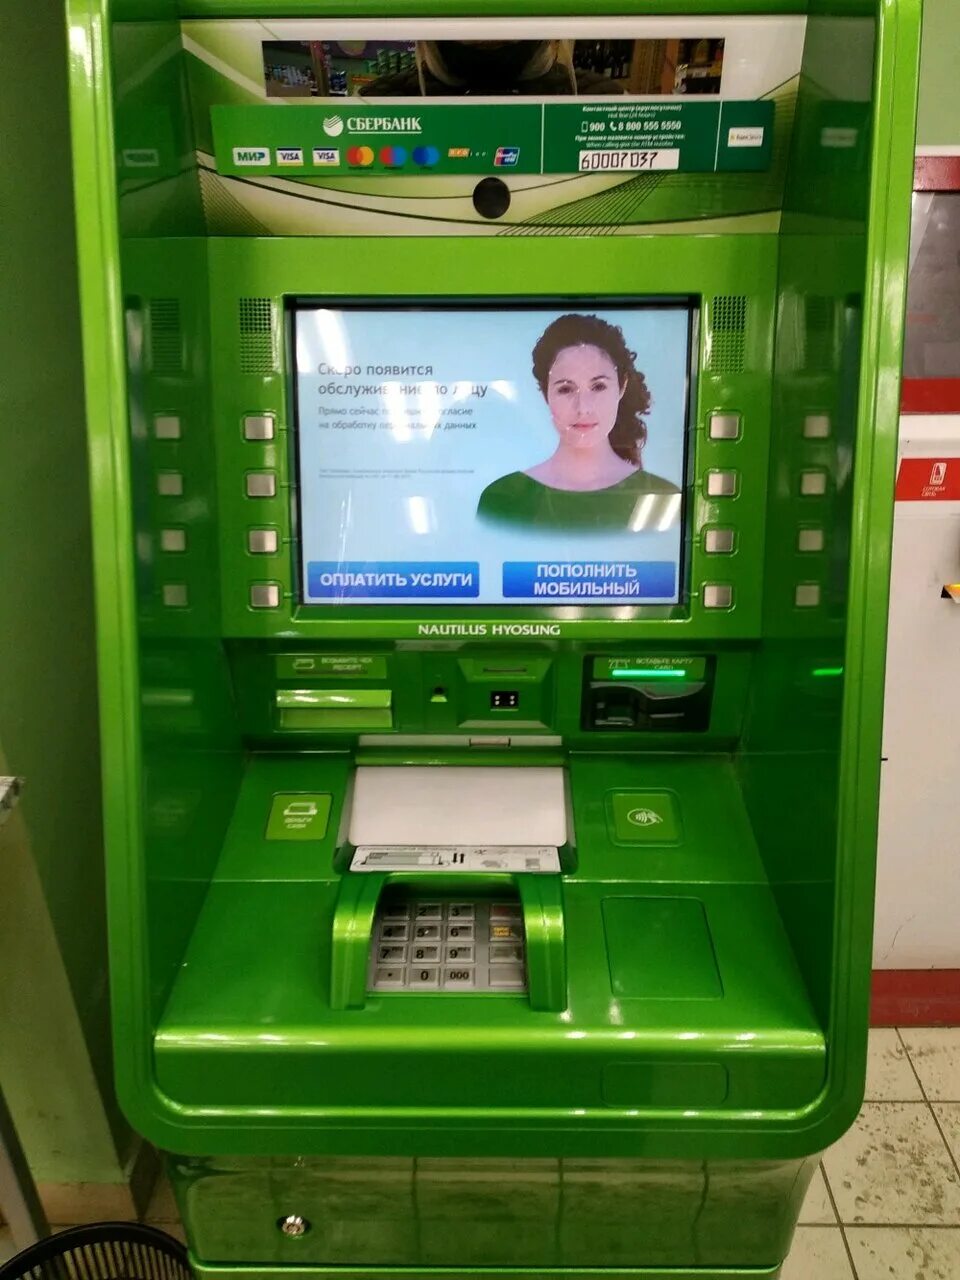 Банкомат сбербанка сочи. Дисплей банкомата. Банкомат Сбербанка. Дисплей банкомата Сбербанка. Экран терминала Сбербанка.